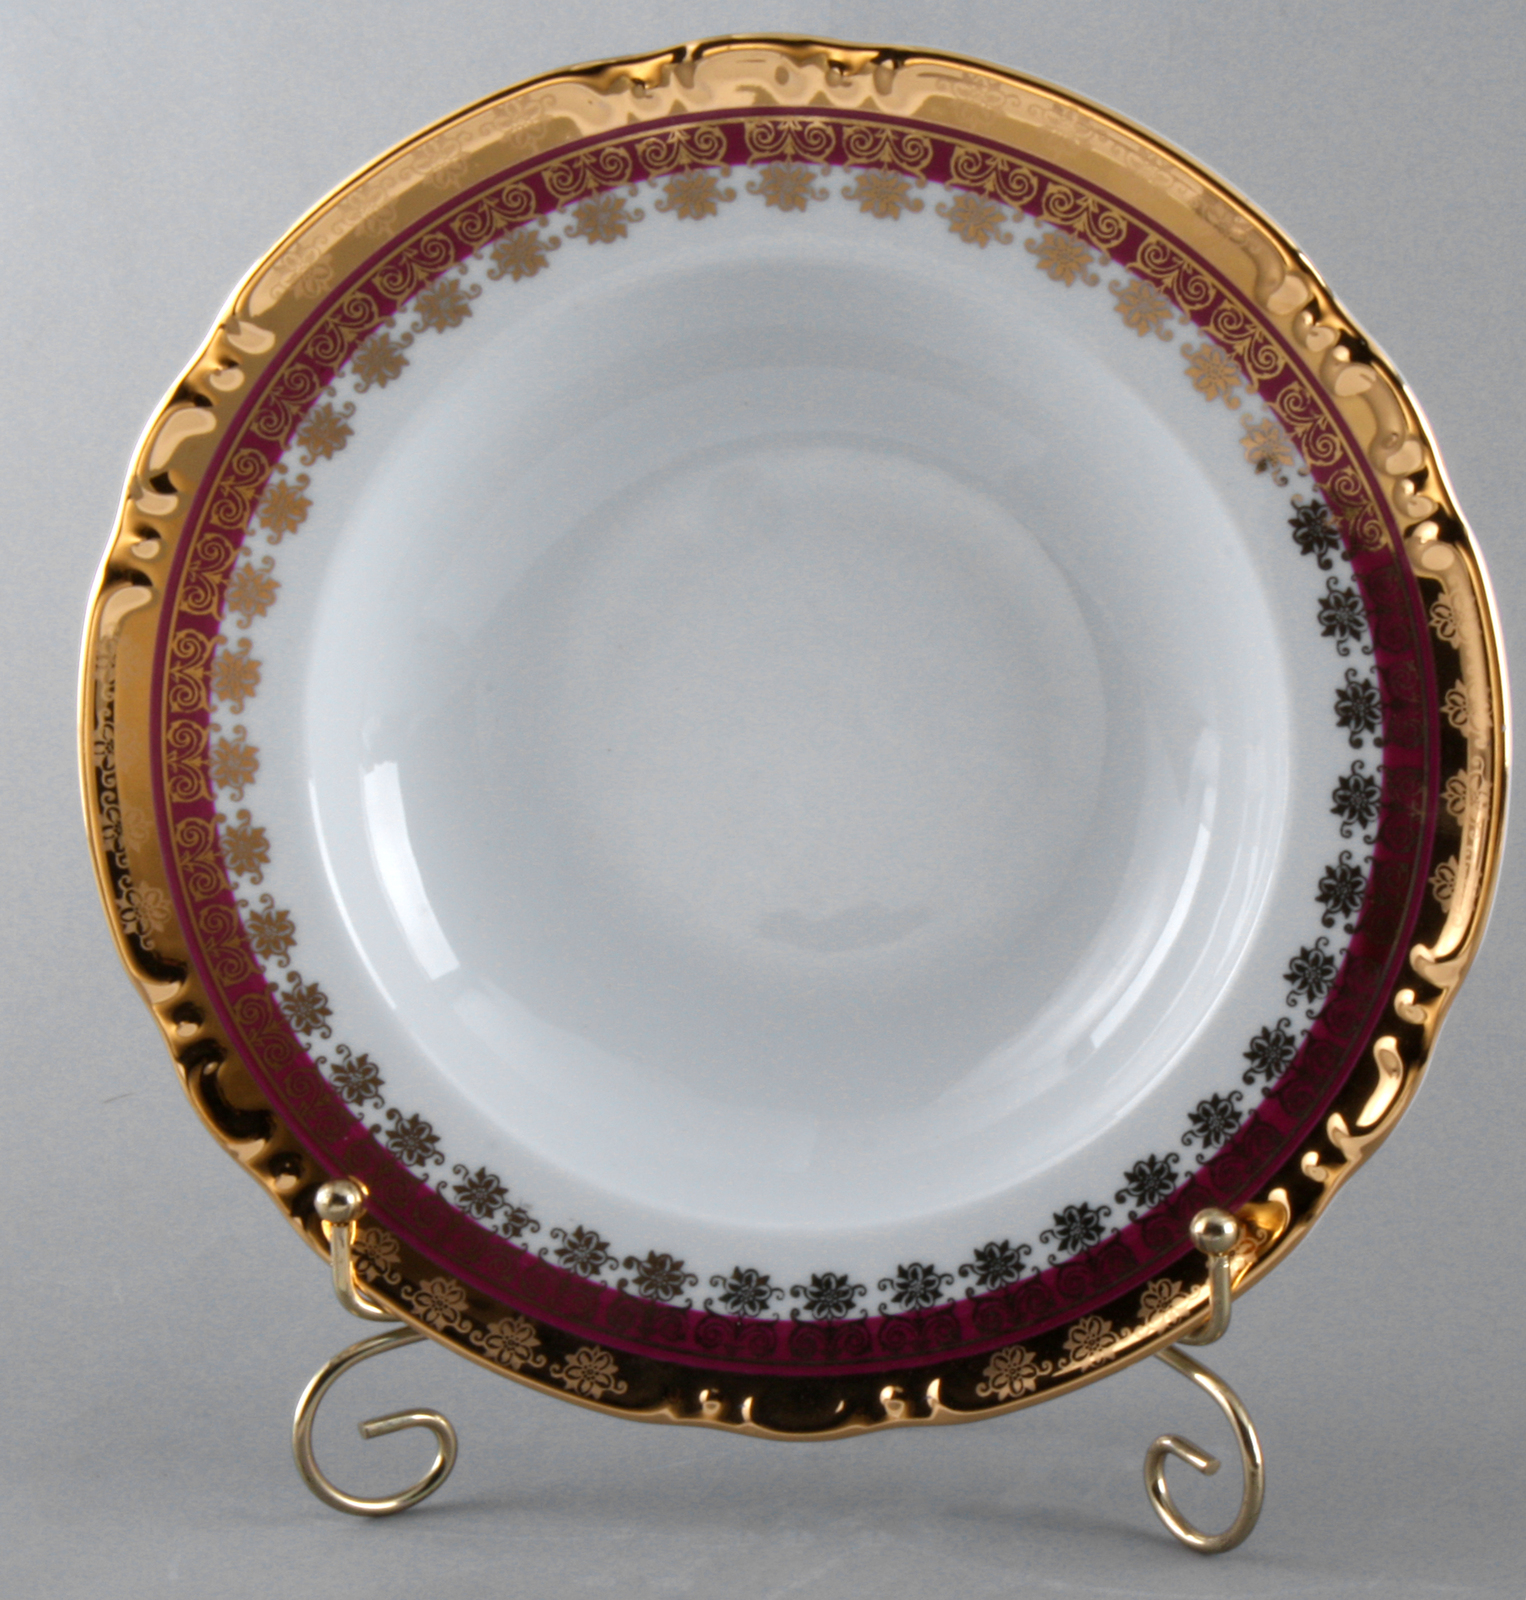 Тарелки 23см. Набор глубоких тарелок. Gddp23 тарелка круглая "Prince" d=23 см., глубокая, фарфор, White Gold.